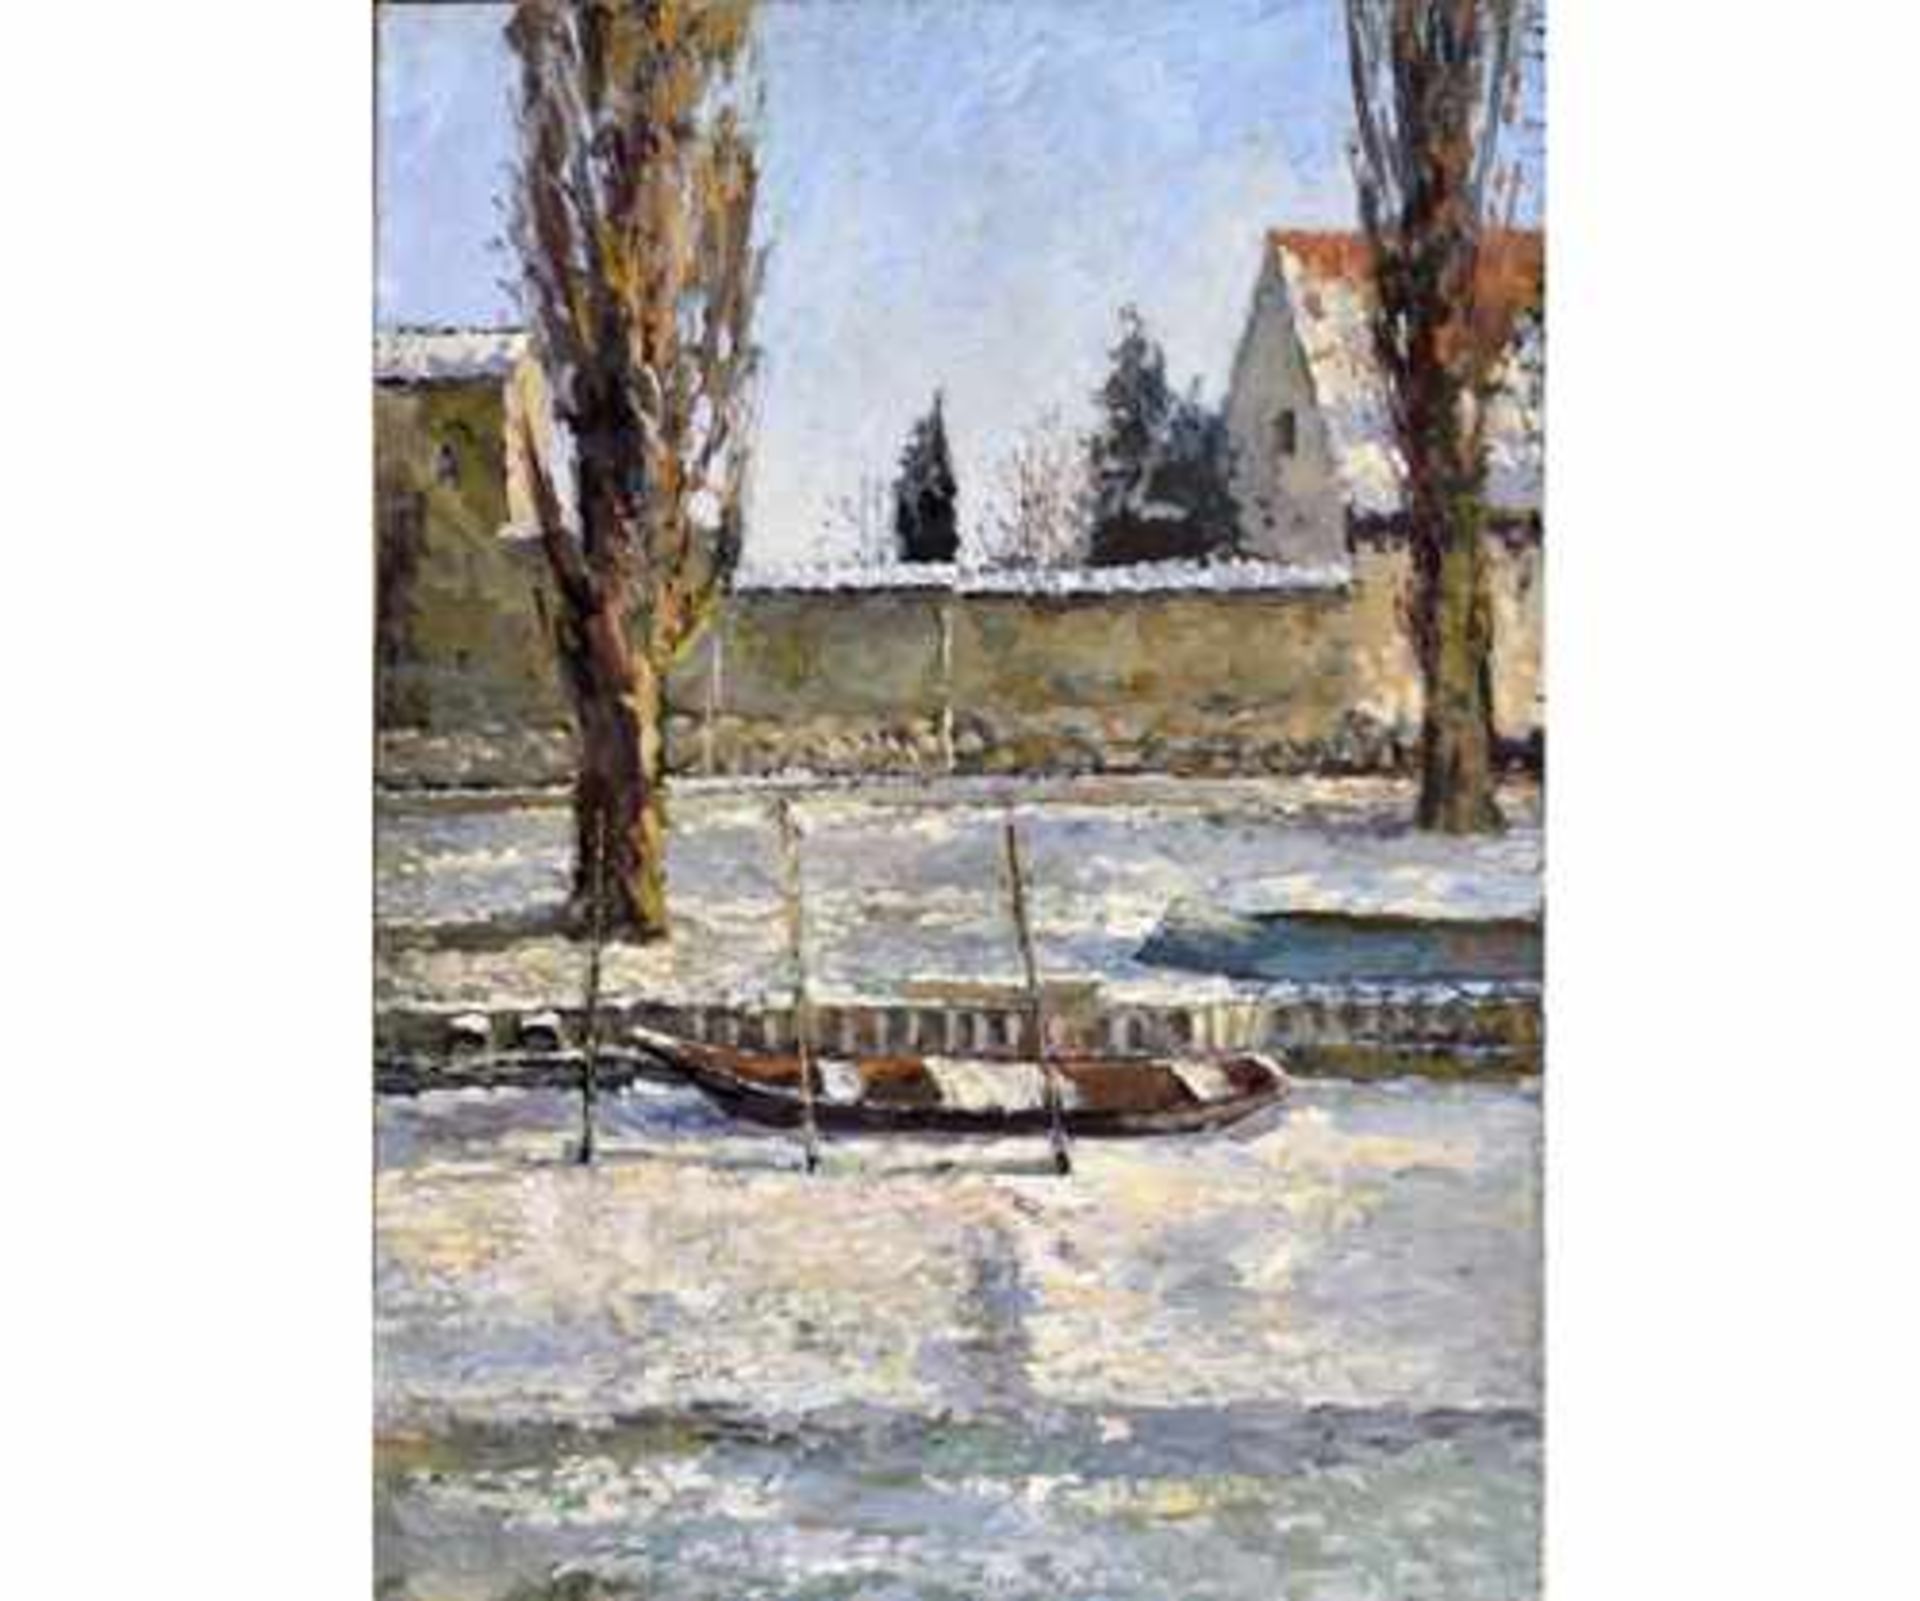 Alexandre SEMENTSOV, 1941 St.Petersburg – 2006 Beeskow; Öl auf Leinwand "Fischerkiez im Winter in